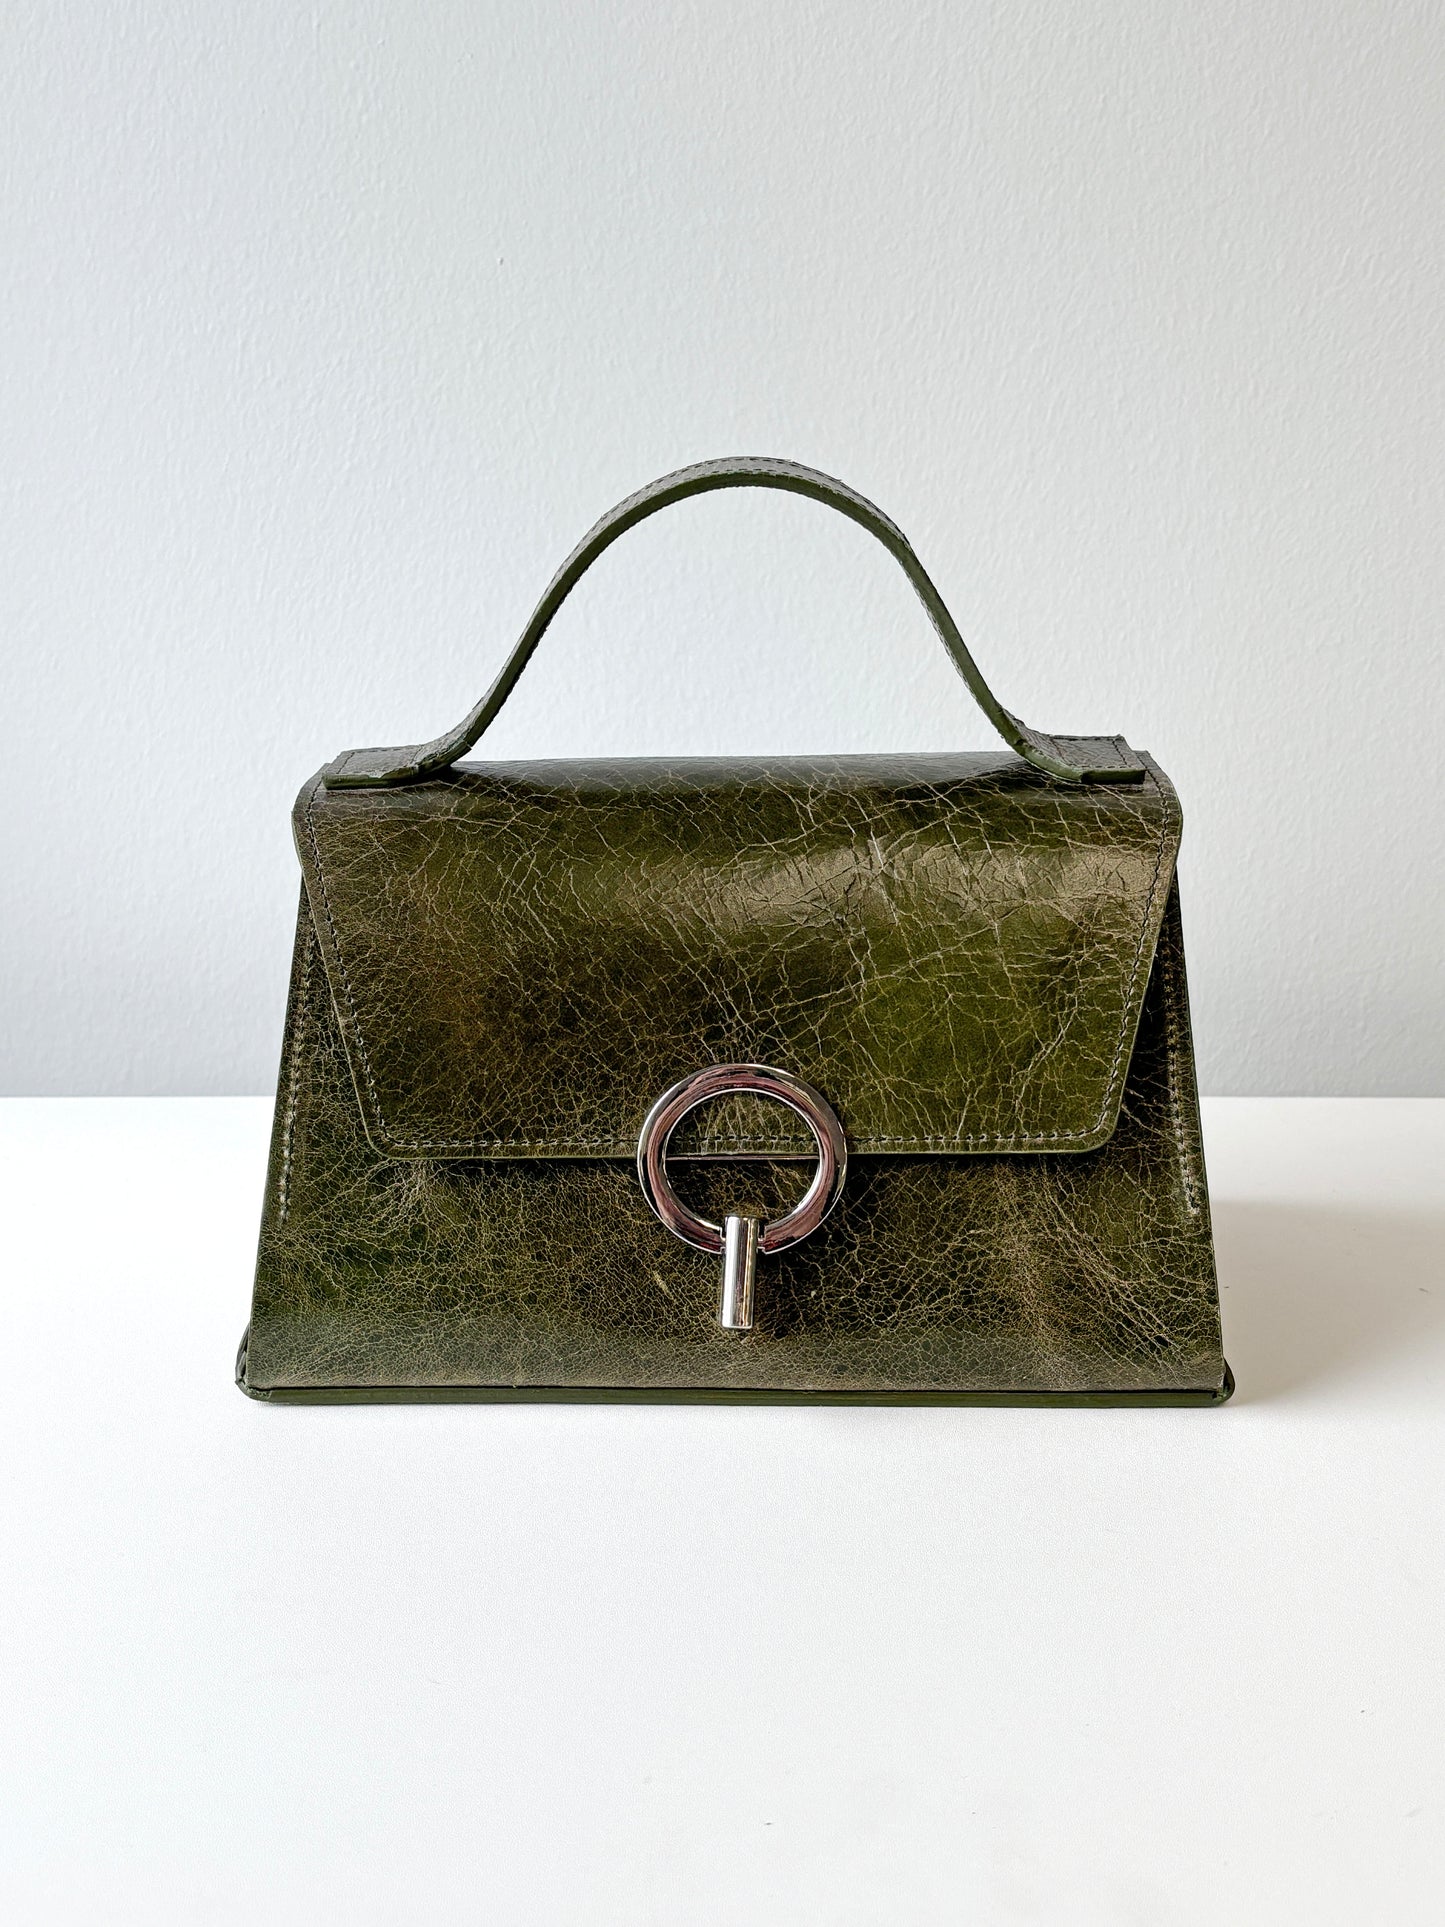 Studyus Monday Ring Handbag in green